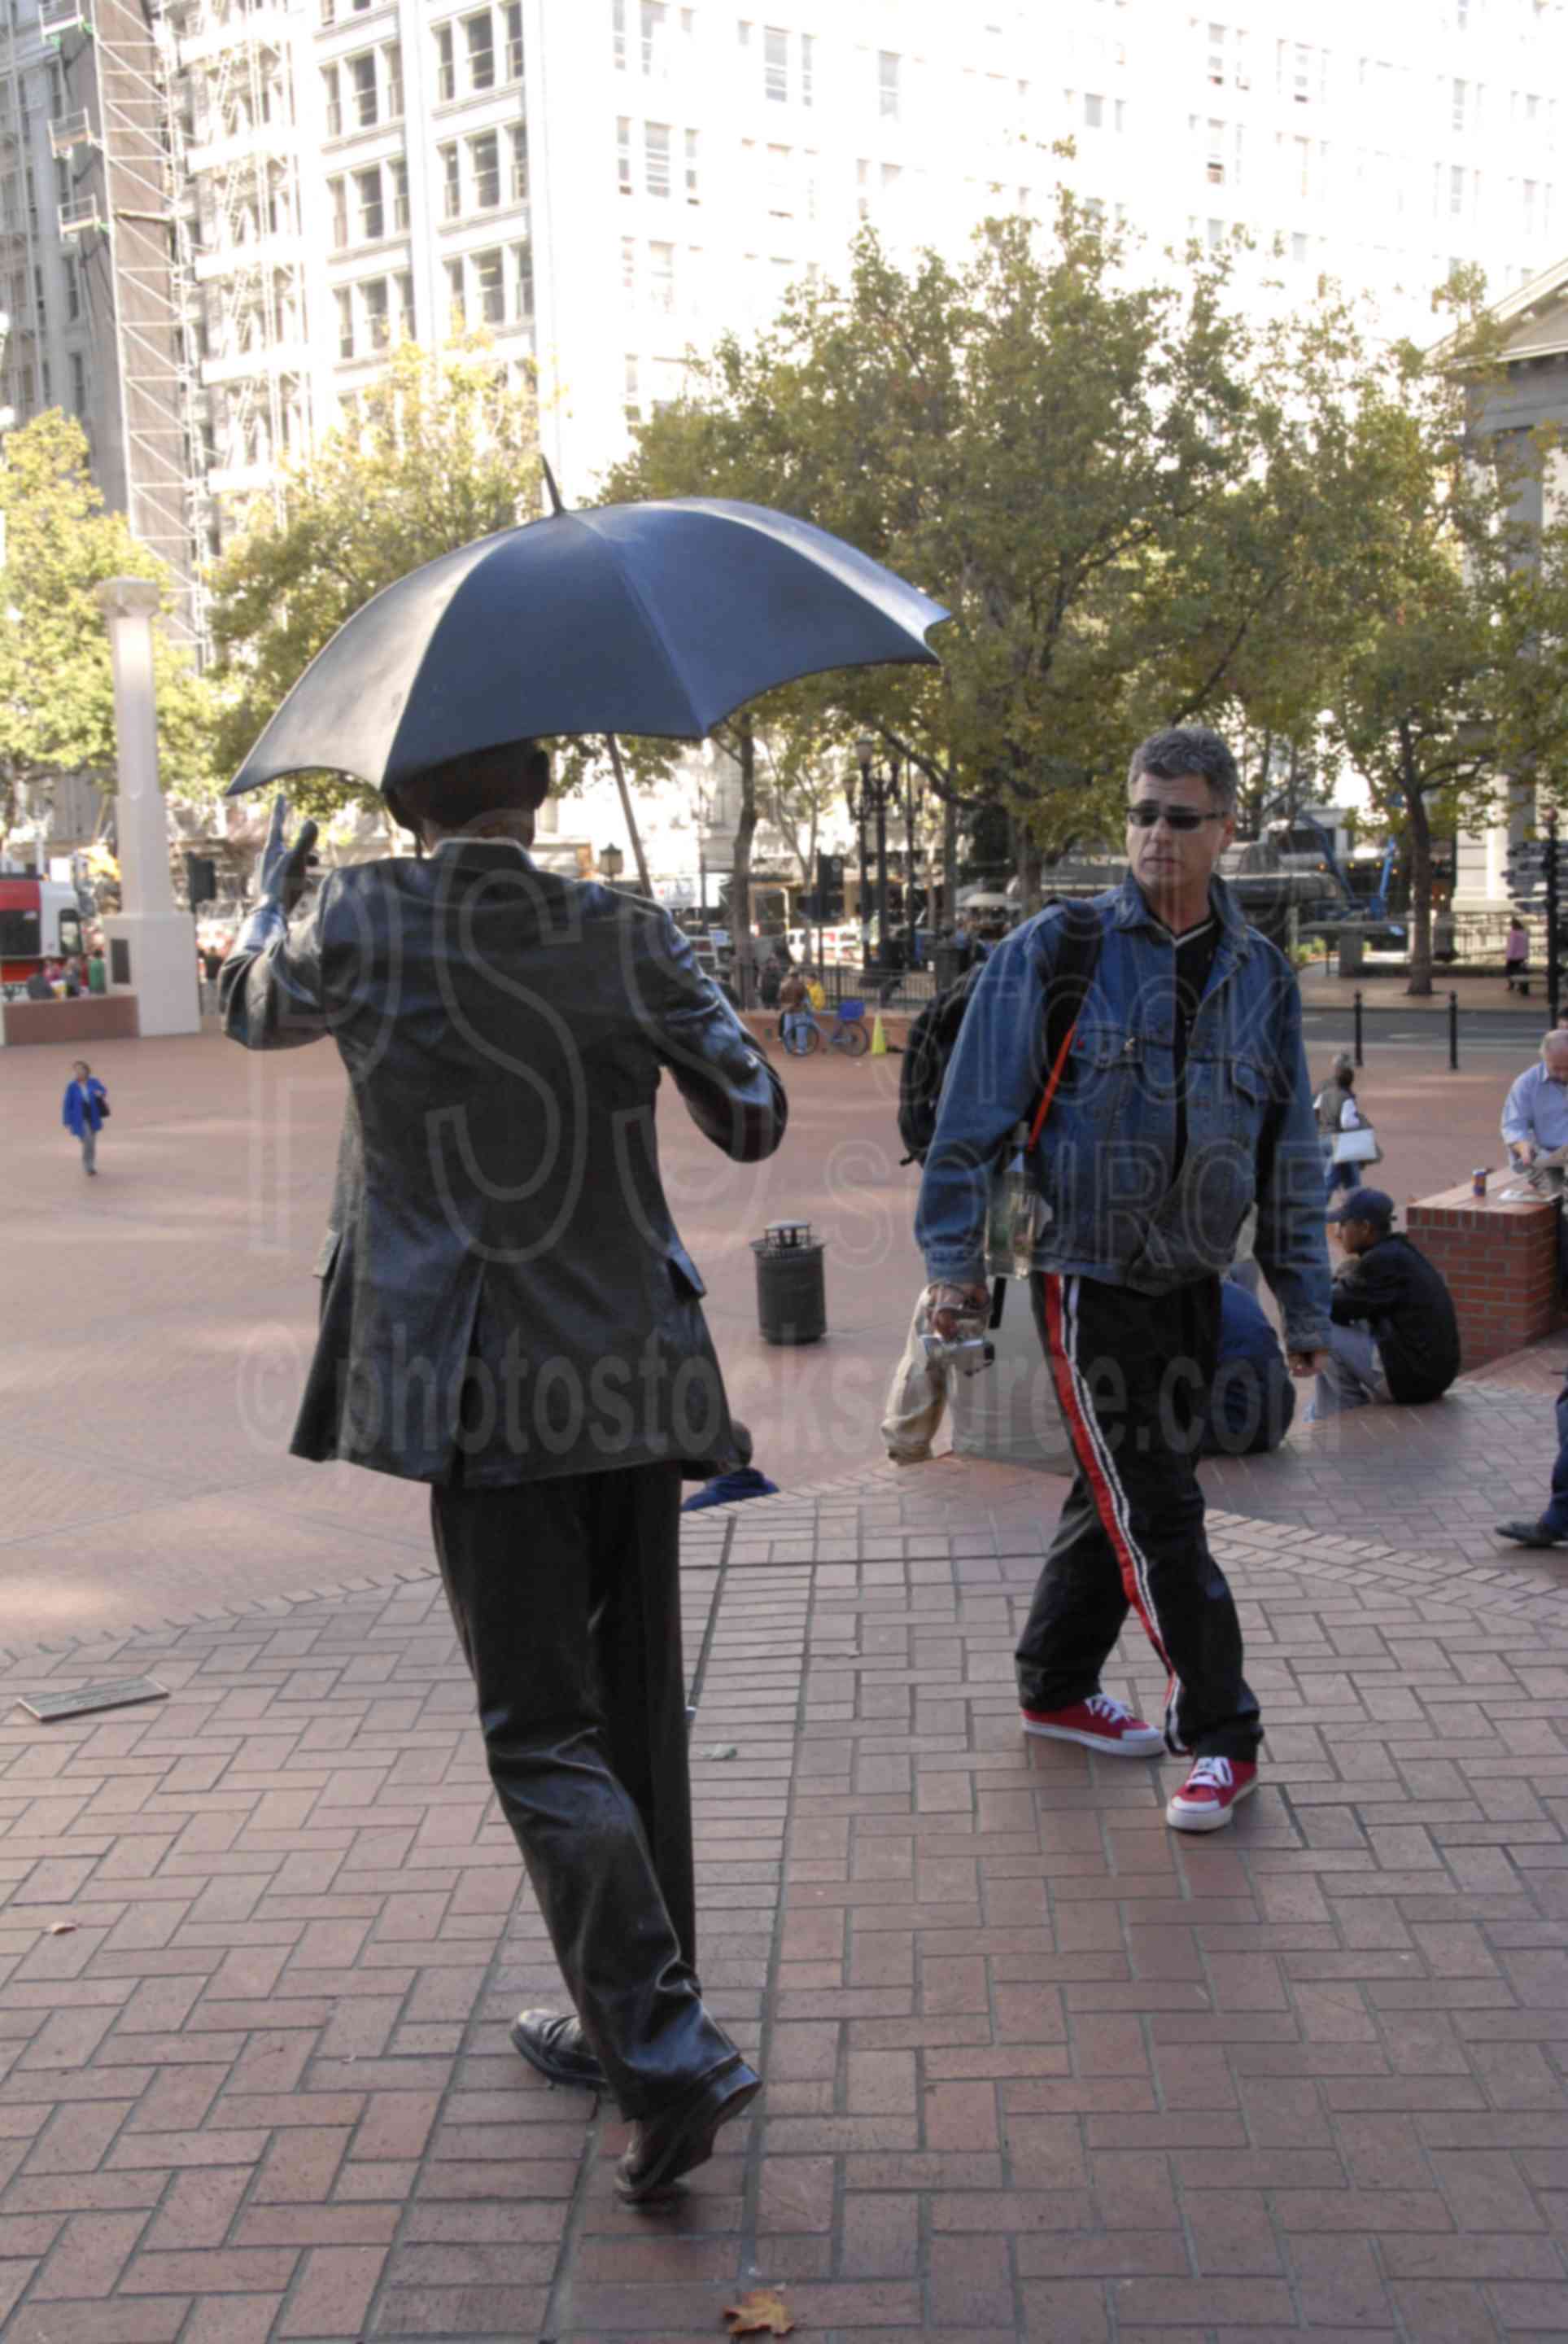 Pioneer Square,sculpture,allow me,umbrella man